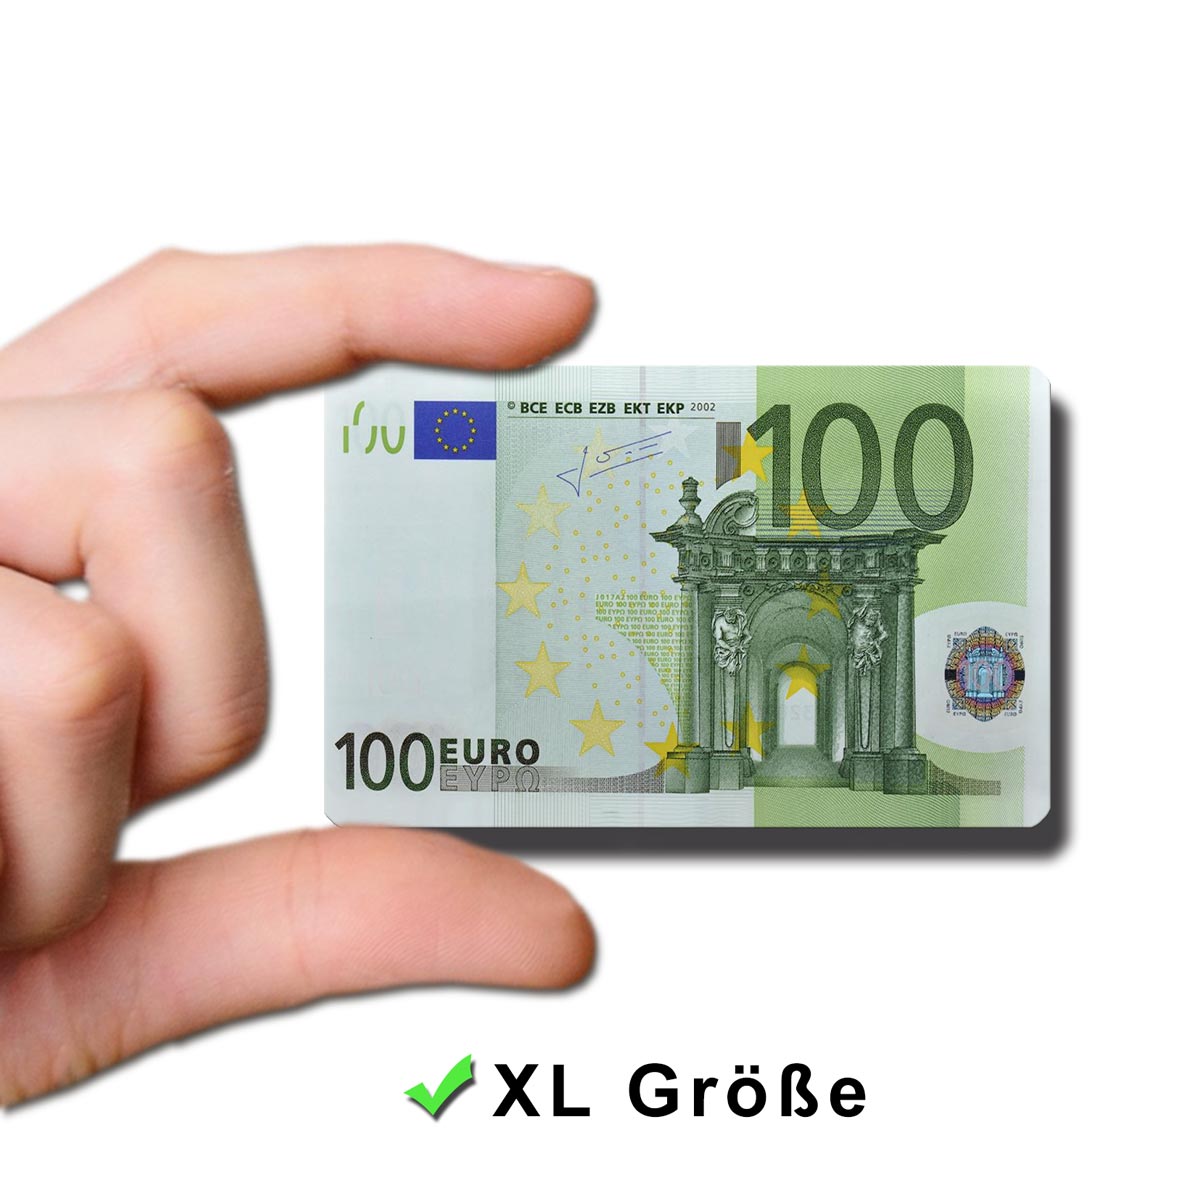 100 Euroschein, Geldschein Magnet 8,5x5,5 cm, Geld, Magnete